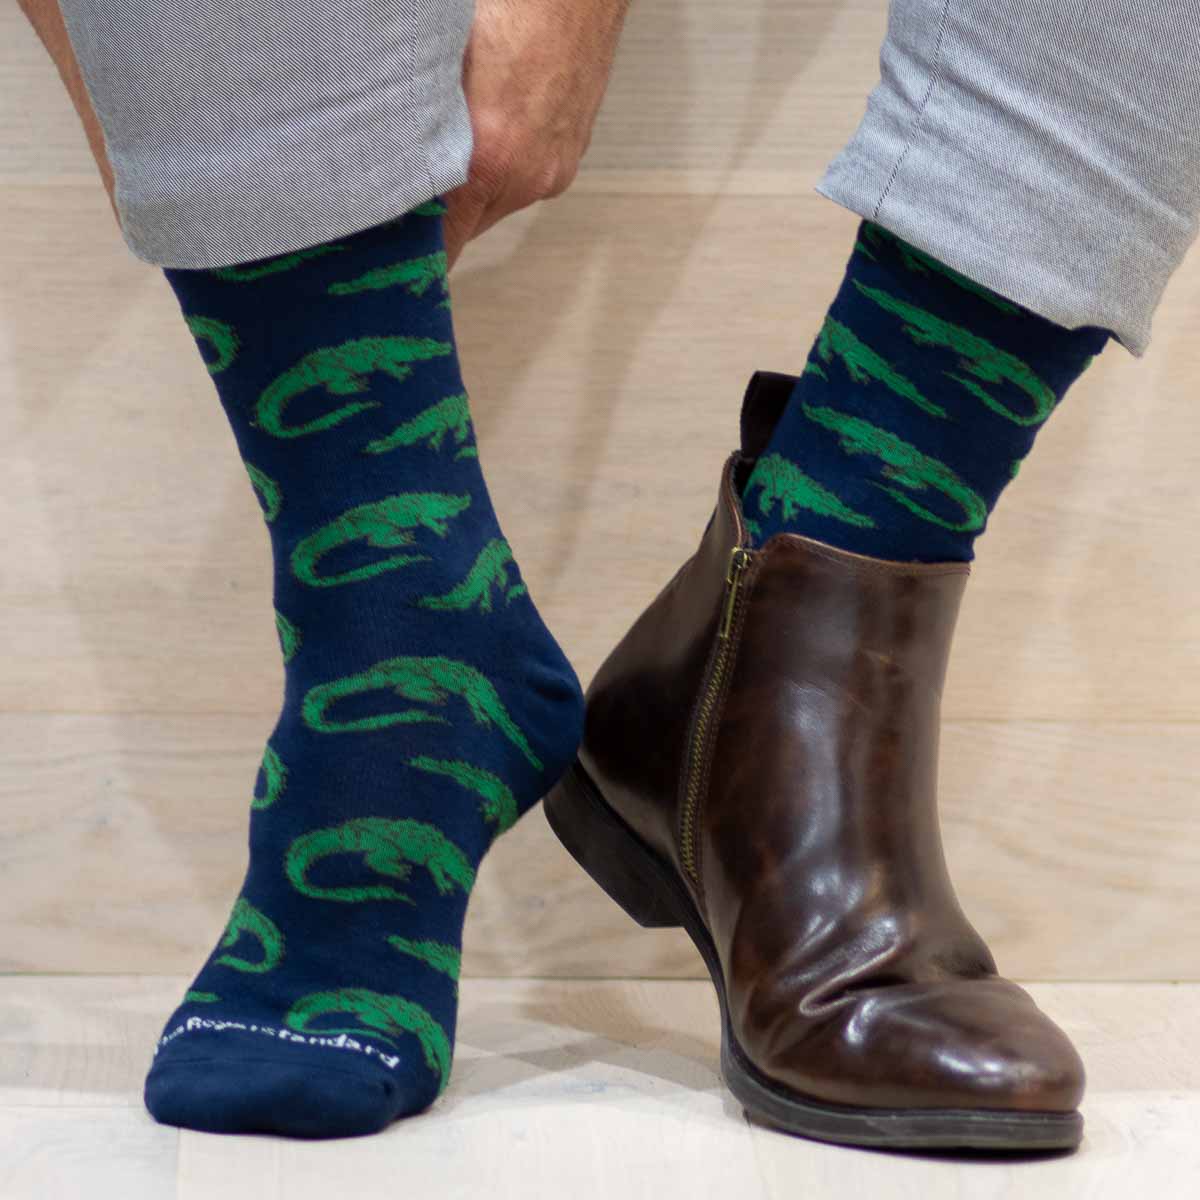 The Royal Standard Men's Later Gator Socks